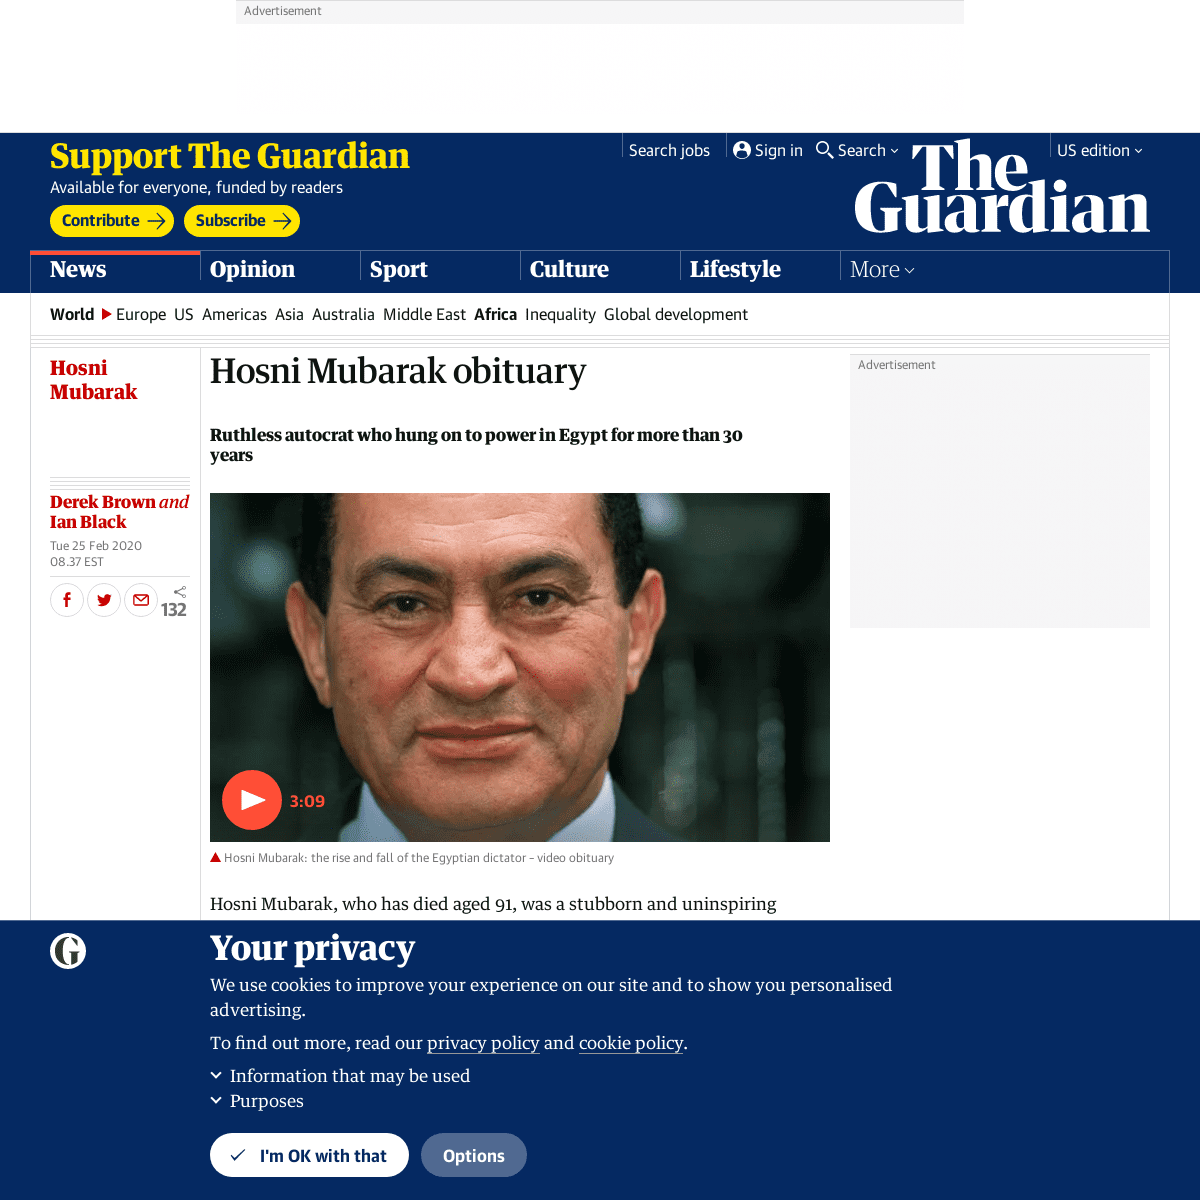 A complete backup of www.theguardian.com/world/2020/feb/25/hosni-mubarak-obituary